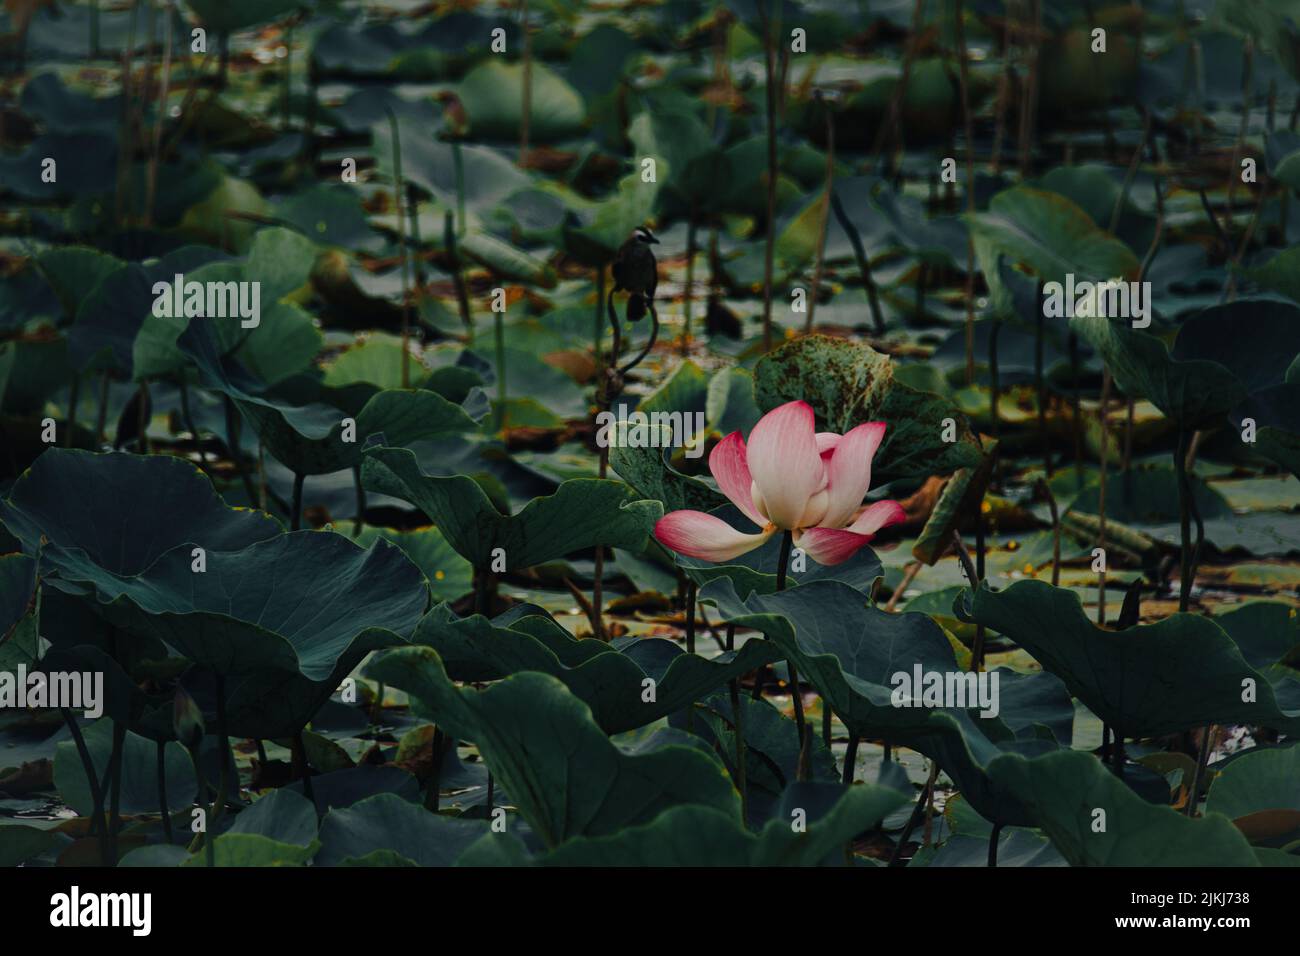 Il fiore di loto o Nelumbo nucifera in uno stagno di foglie delicatamente ondeggianti Foto Stock